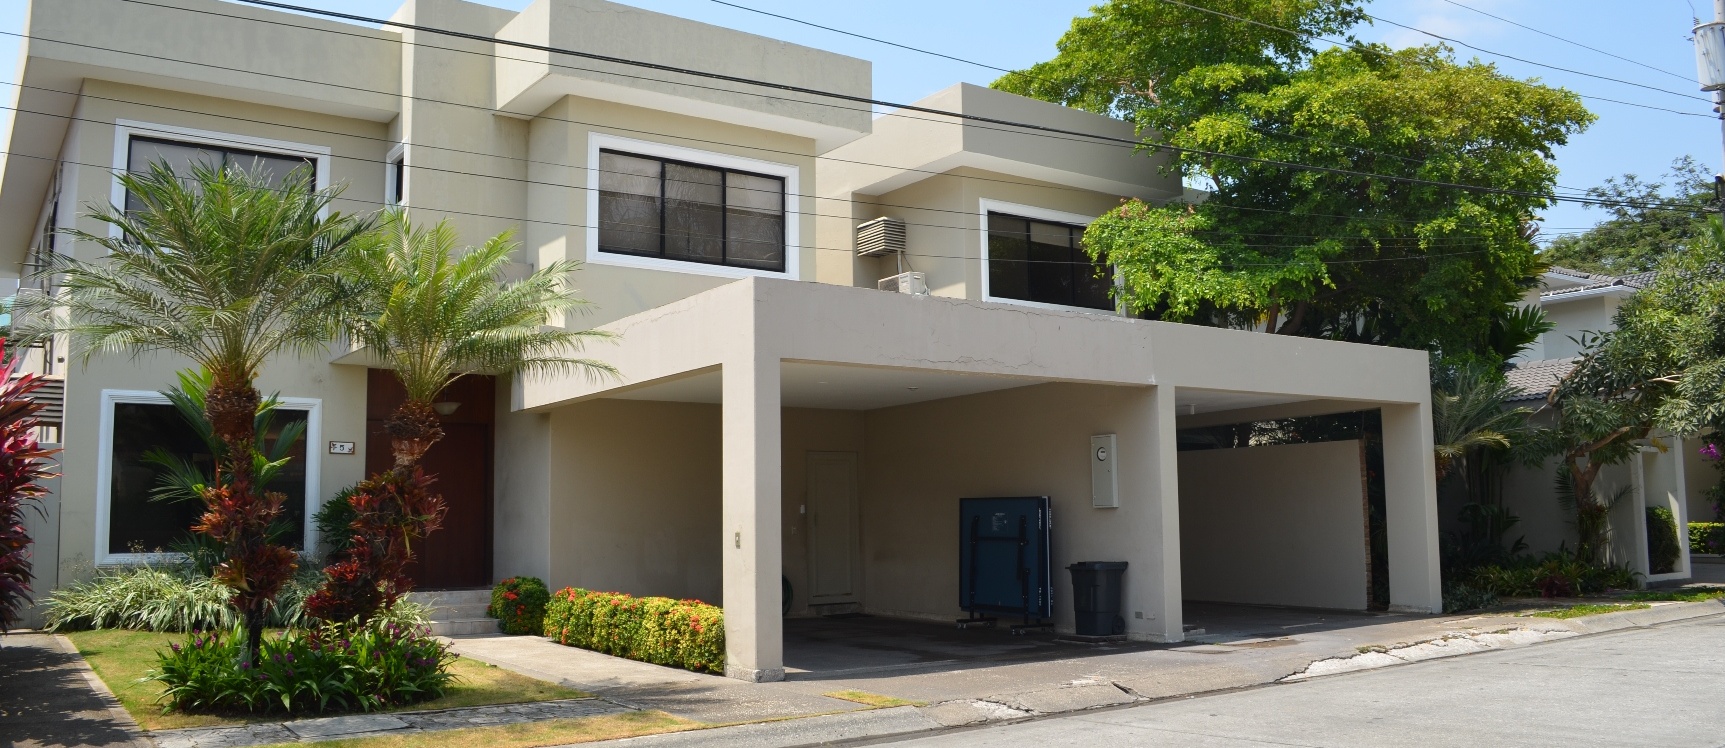 GeoBienes - Casa en alquiler en urbanización Rio Grande - Samborondon    - Plusvalia Guayaquil Casas de venta y alquiler Inmobiliaria Ecuador